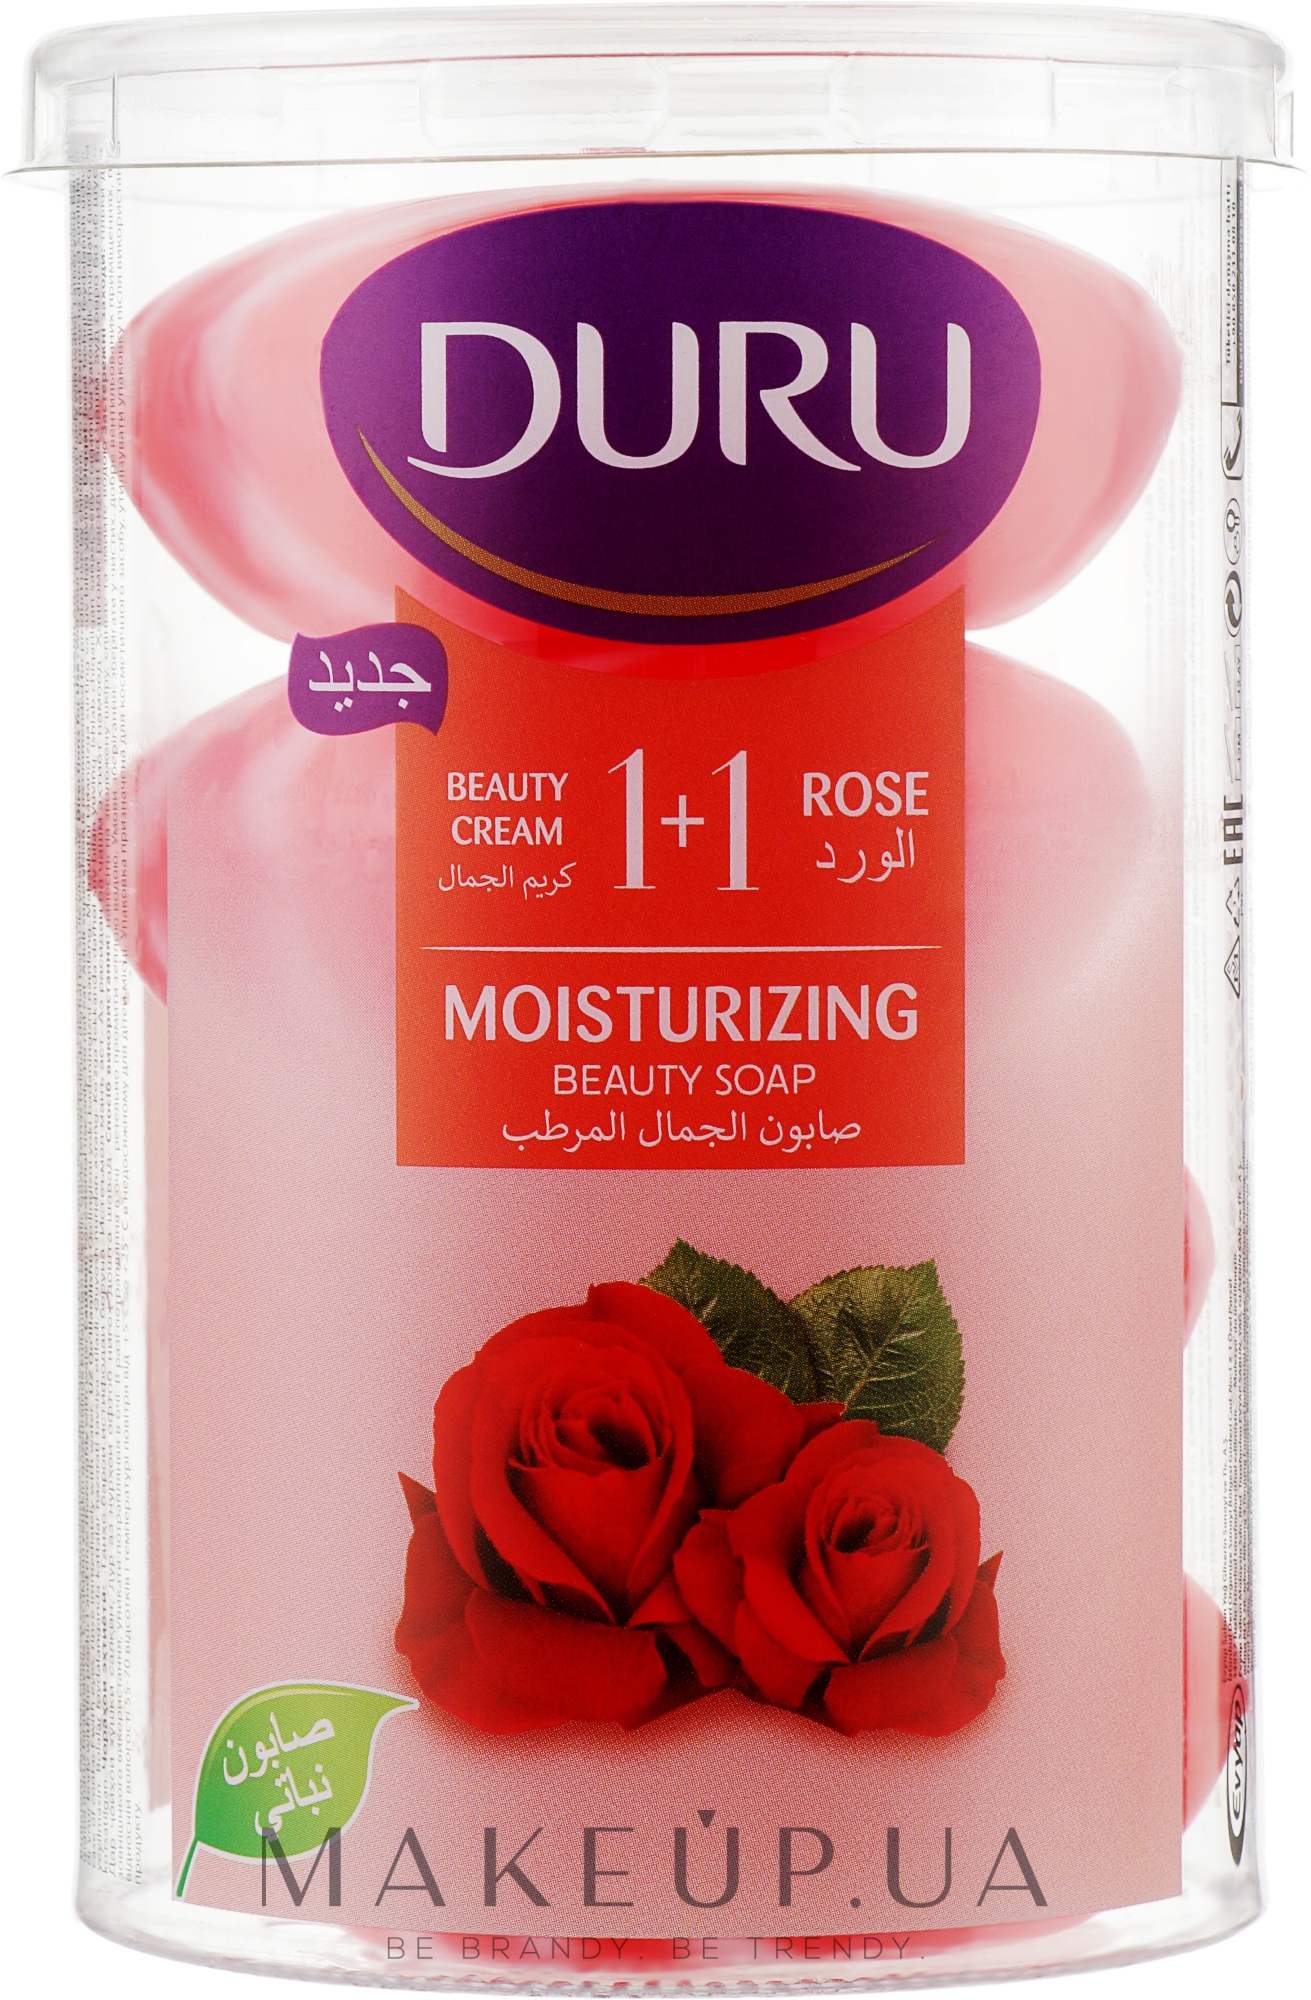 Мыло в экономичной упаковке "Роза" - Duru 1+1 Moisturizing Rose Beauty Soap — фото 4x100g